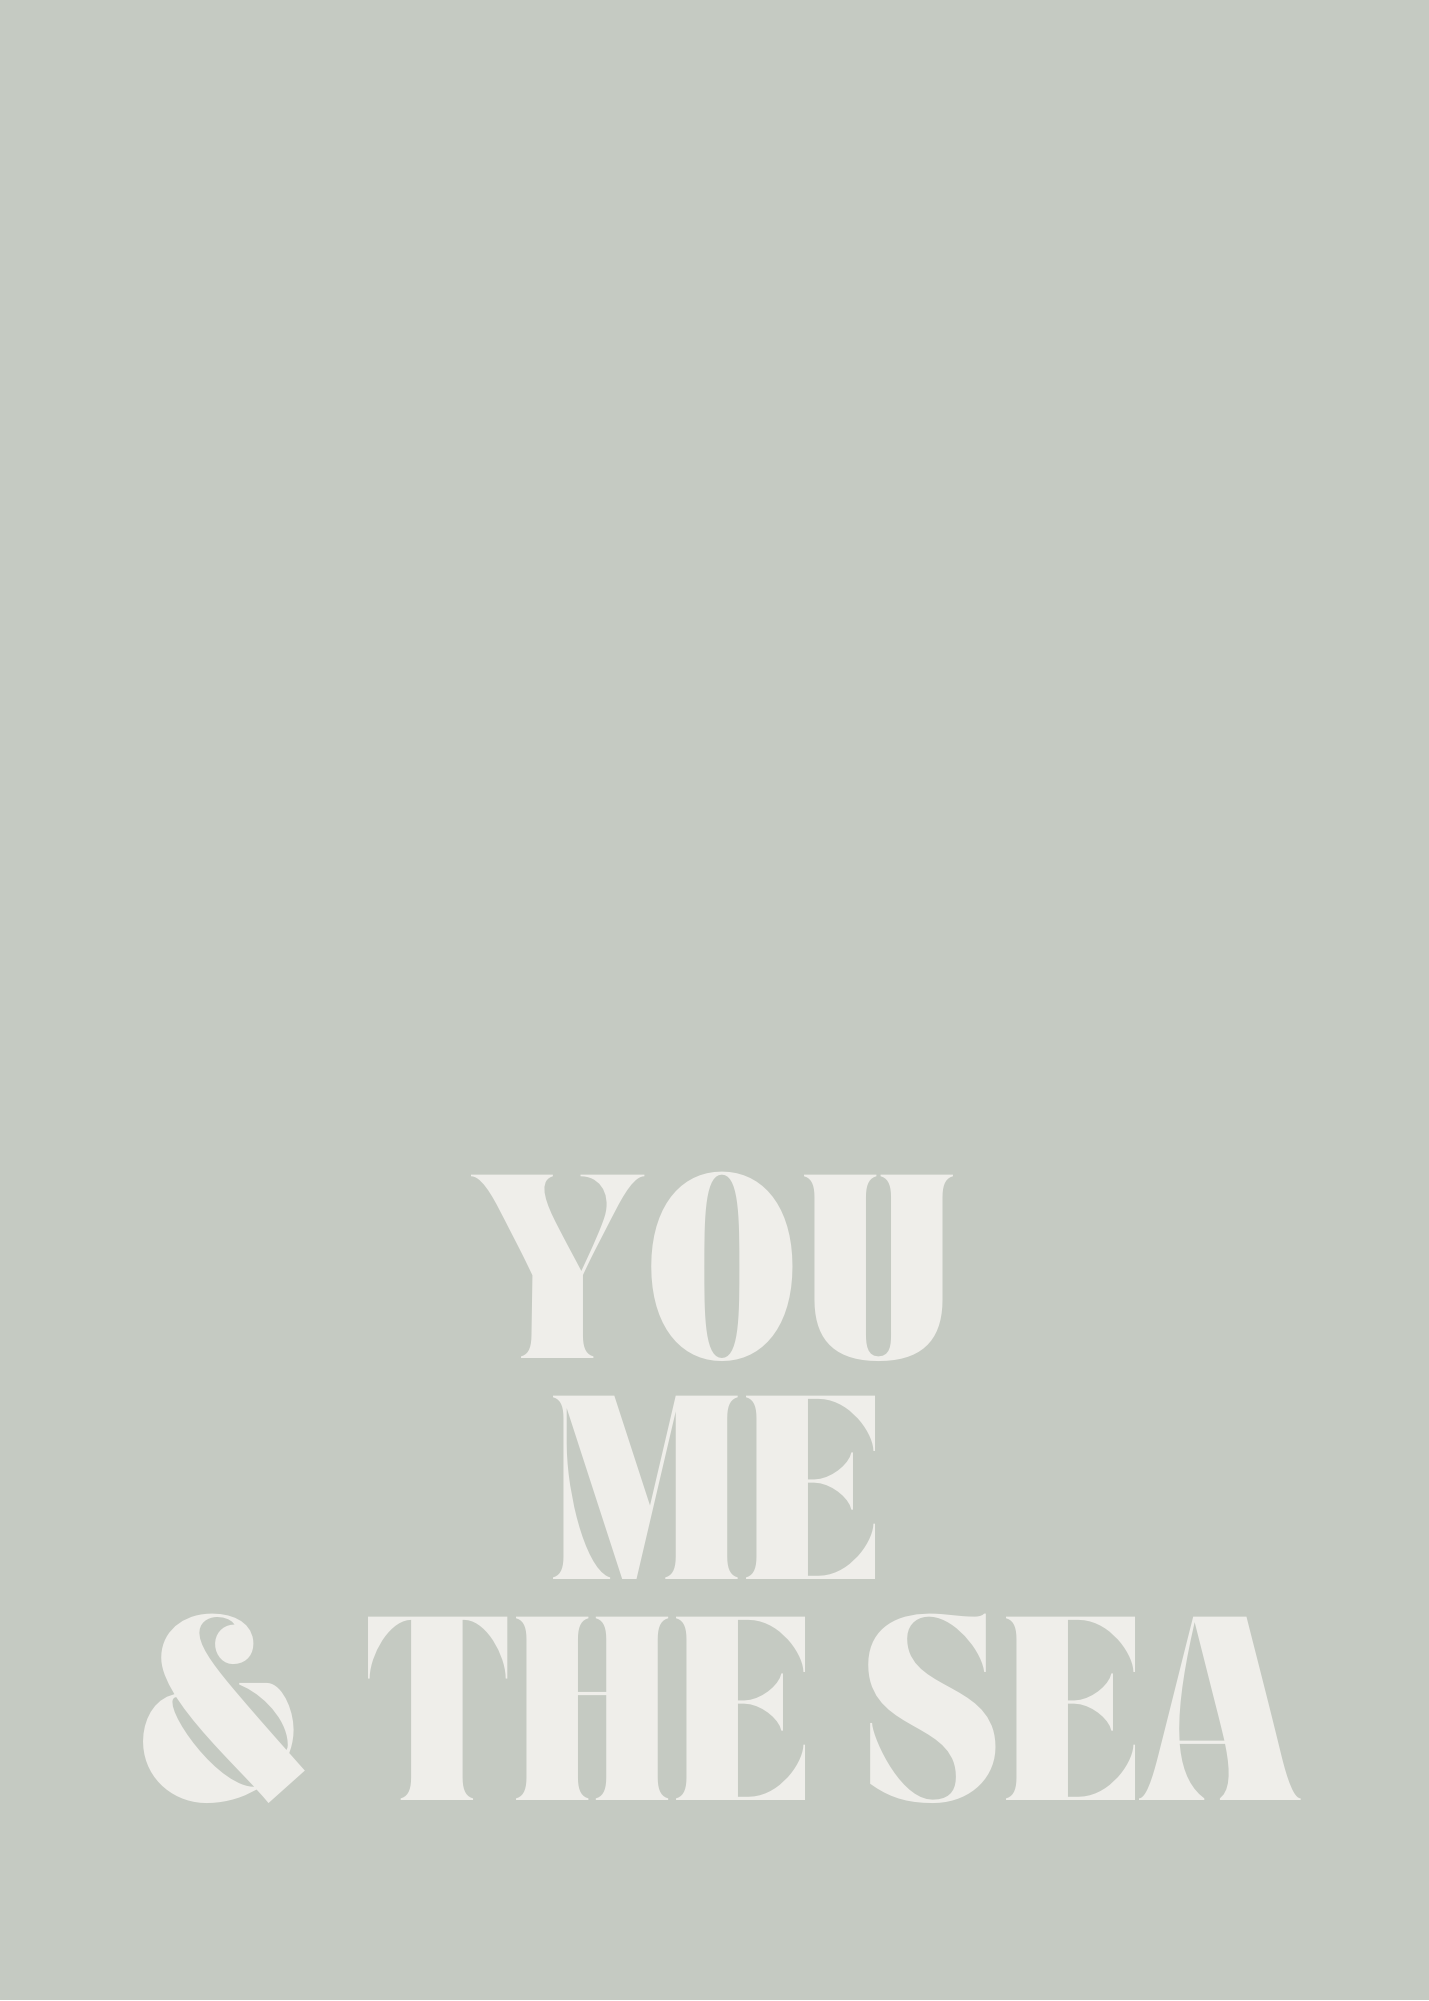 You, Me, & The Sea 5x7 Print